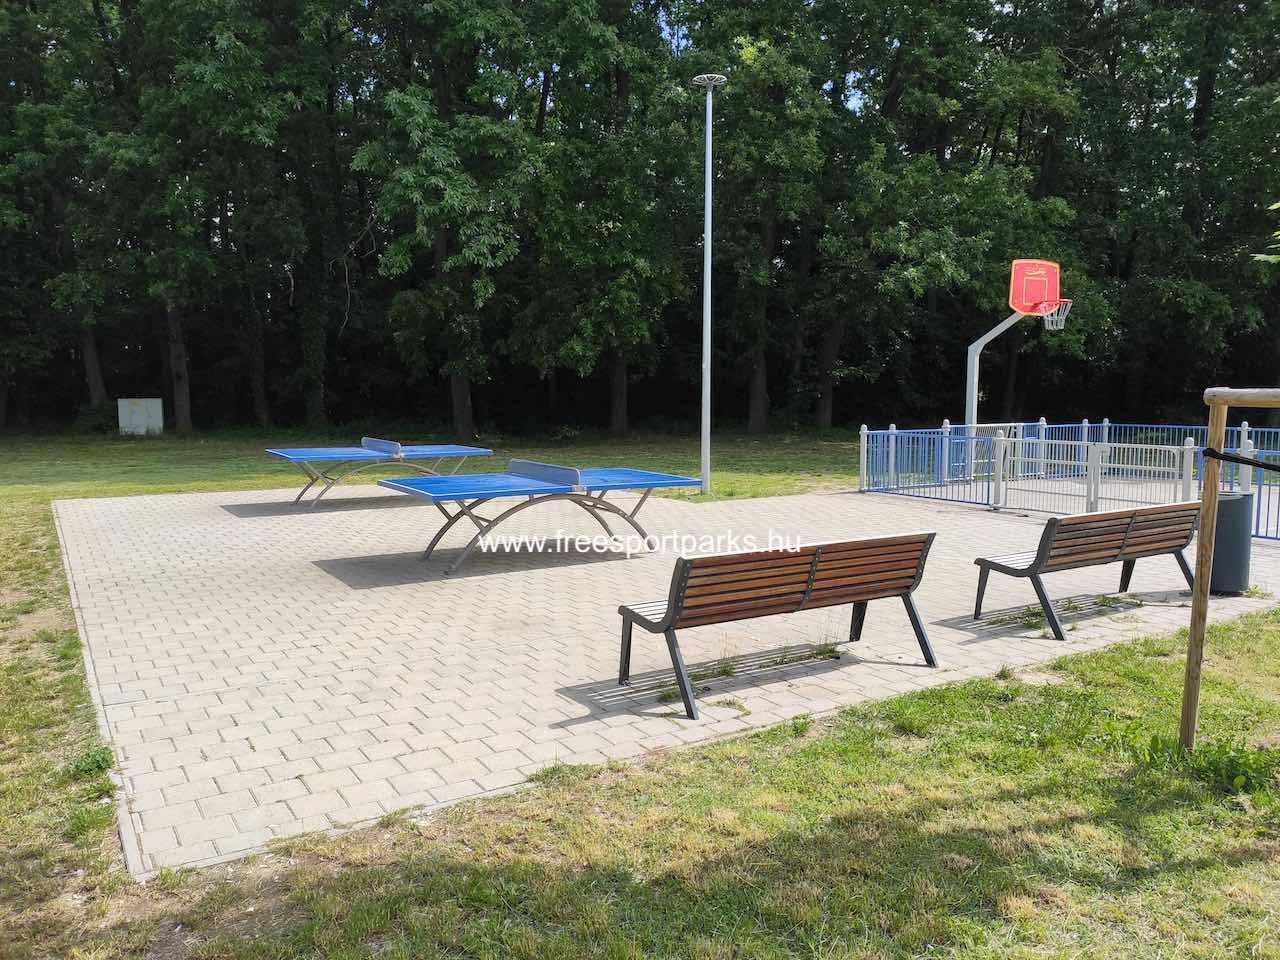 ping-pong asztalok padokkal - Építők Parkja Tata - Free Sport Parks térkép